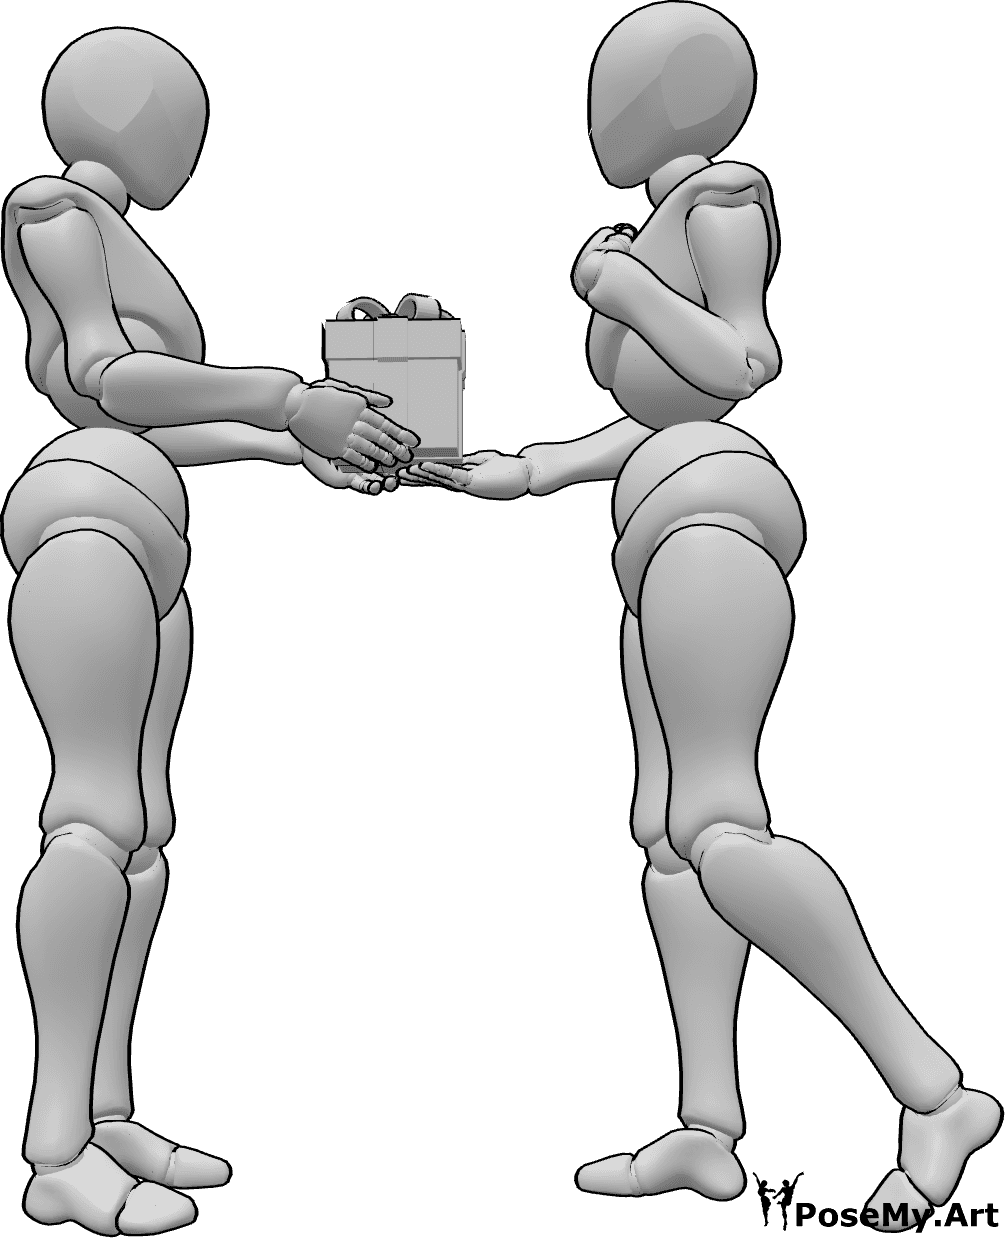 Referencia de poses- Postura de regalo de cumpleaños - Una mujer hace un regalo de cumpleaños a otra mujer, referencia de dibujo de cumpleaños